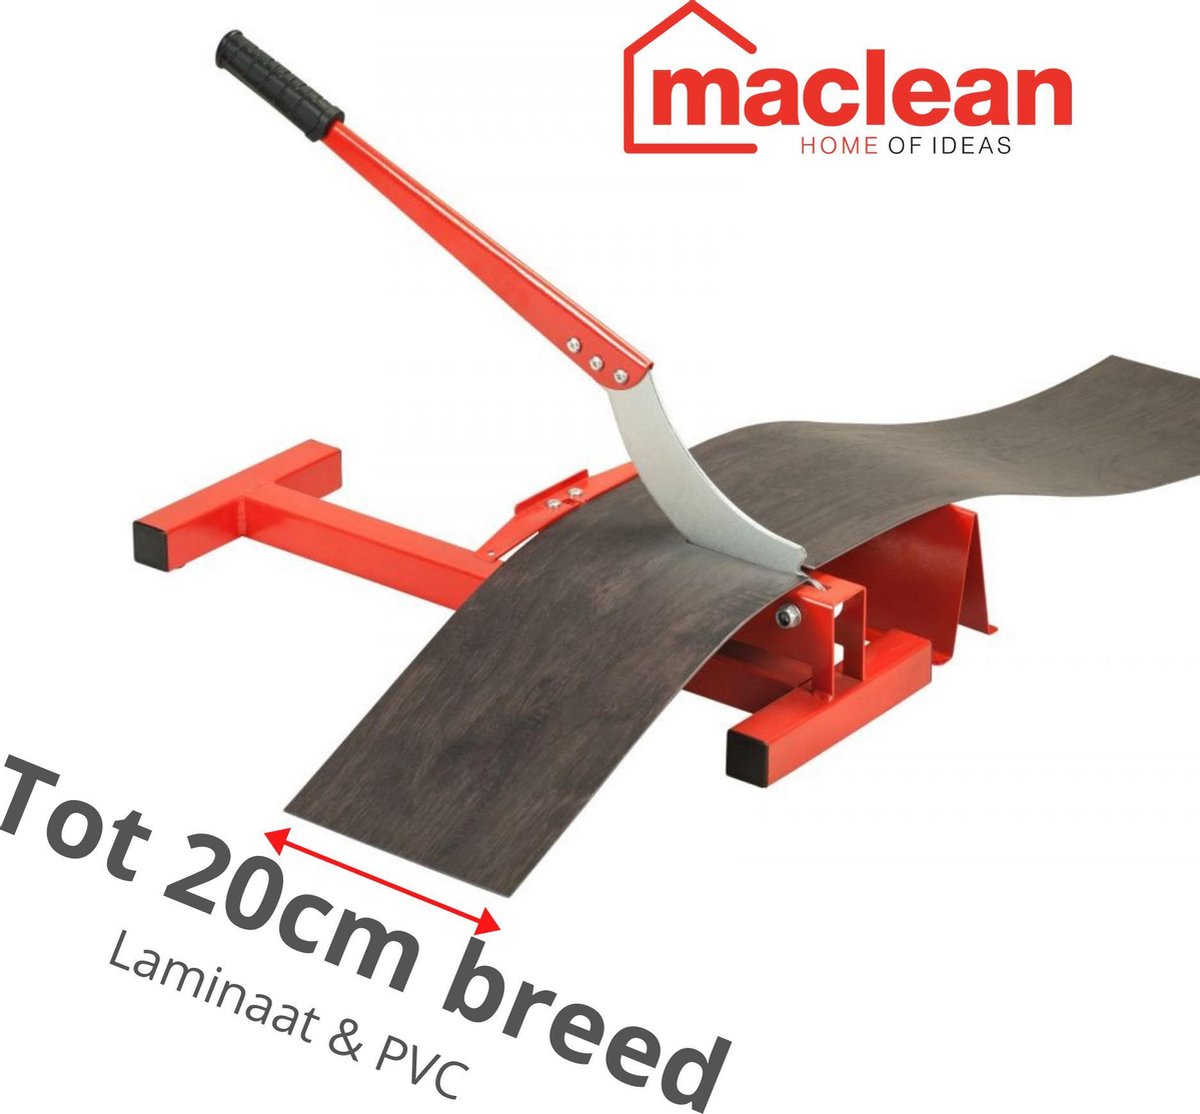 Laminaatsnijder - PVC knipper - 20cm breed - Voor Laminaat en PVC - MacLean